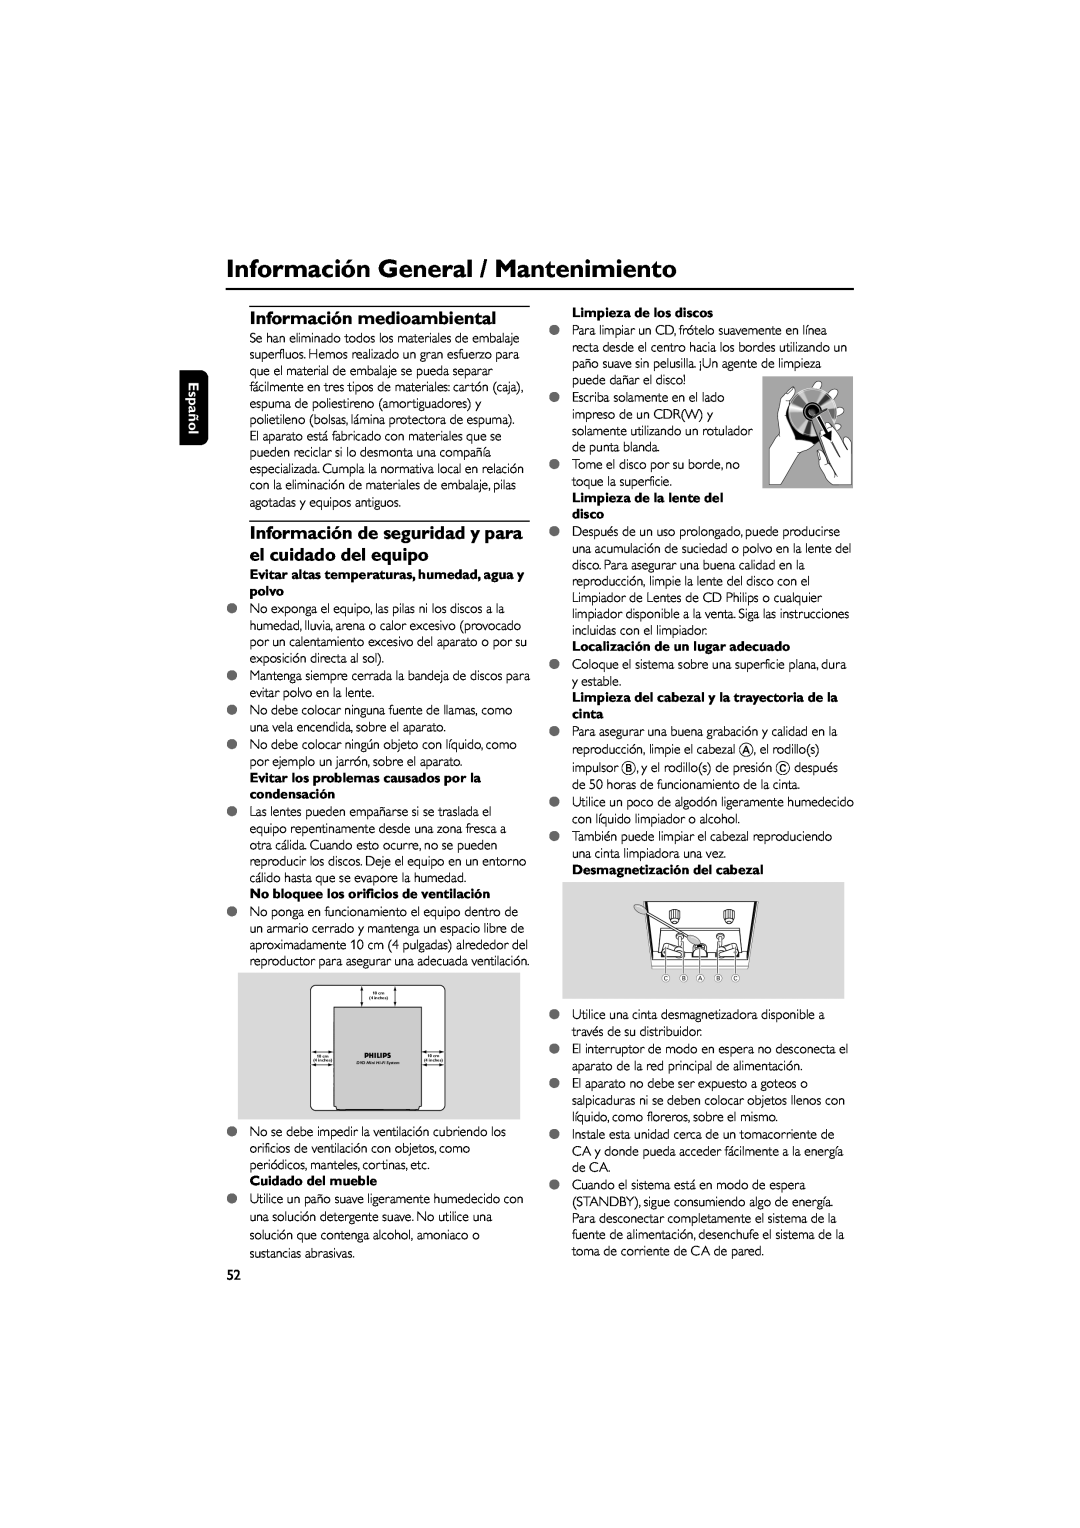 Philips FWD792 user manual Información General / Mantenimiento, Información medioambiental, Español, Cuidado del mueble 